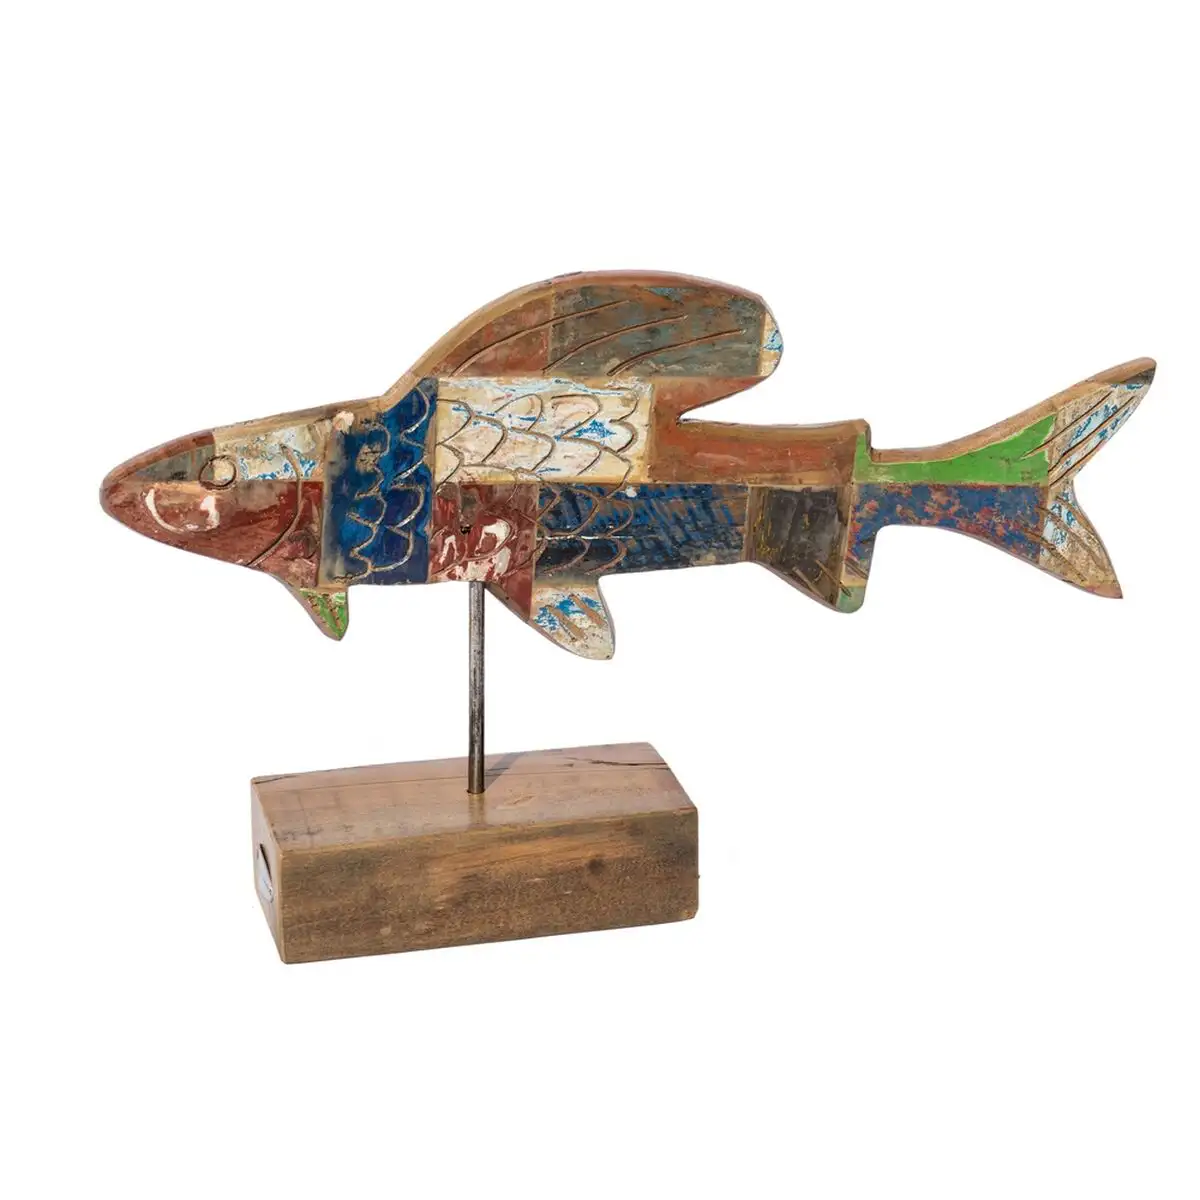 Figurine decorative calypso poisson 51 x 13 x 28 cm teck multicouleur_5985. Bienvenue chez DIAYTAR SENEGAL - Où Choisir est une Invitation au Voyage. Explorez notre boutique en ligne et découvrez des produits qui vous transportent dans l'univers du Sénégal.